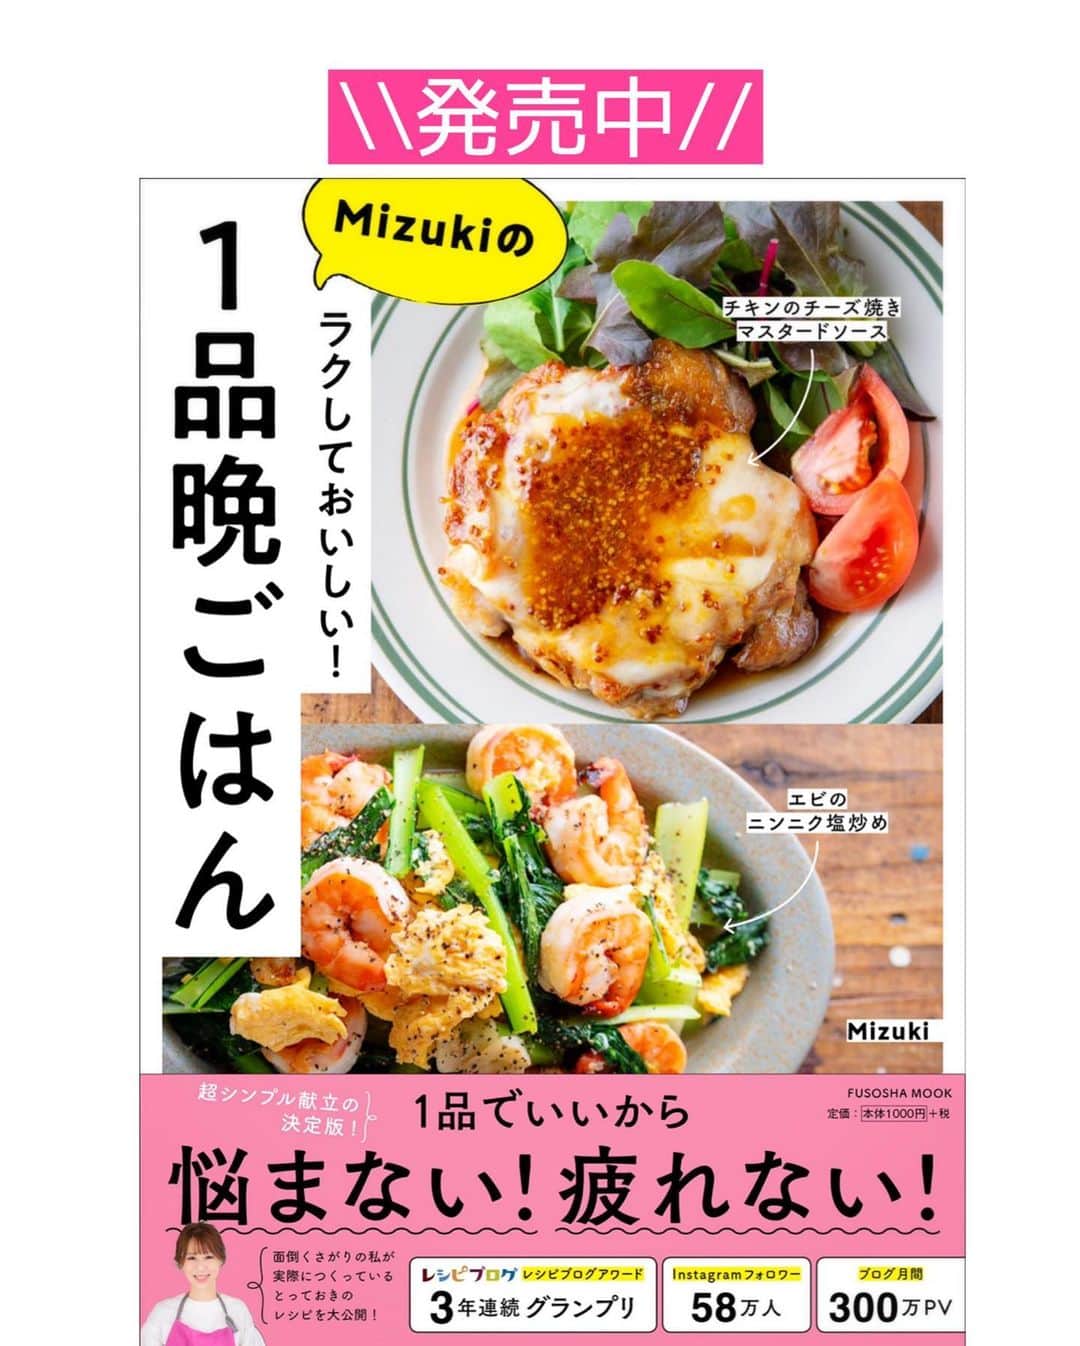 Mizuki【料理ブロガー・簡単レシピ】さんのインスタグラム写真 - (Mizuki【料理ブロガー・簡単レシピ】Instagram)「・﻿ 【#レシピ 】ーーーーーーーーーー﻿ ♡豚肉と白菜のほったらかし煮♡﻿ ーーーーーーーーーーーーーーーー﻿ ﻿ 　﻿ ﻿ おはようございます(*^^*)﻿ ﻿ 今日ご紹介させていただくのは﻿ \ 豚肉と白菜のほったらかし煮 /﻿ ﻿ 鍋に材料全部重ねて煮るだけの﻿ 超〜簡単レシピです(*´艸`)﻿ ﻿ うま味たっぷりのスープまで﻿ 飲み干したくなる美味しさですよ♩﻿ 手間なくできるので﻿ お気軽にお試し下さいね(*^^*)﻿ ﻿ ﻿ ﻿ ＿＿＿＿＿＿＿＿＿＿＿＿＿＿＿＿＿＿＿＿﻿ 【2人分】﻿ 豚バラ薄切り肉...150g﻿ 白菜...1/4個(400g)﻿ にんにく...1かけ﻿ ●水...200ml﻿ ●みりん...大1﻿ ●鶏がらスープ・醤油...各小2﻿ ごま・万能ねぎ...各適量﻿ ﻿ 1.豚肉は4cm長さに切る。白菜はざく切りにする。にんにくは薄切りにする。﻿ 2.鍋に白菜と豚肉を交互に重ね入れ、にんにくをのせる。﻿ 3.●を加えて中火にかけ、煮立ったら蓋をして10分煮る。﻿ 仕上げにごまとねぎをトッピングする。 ￣￣￣￣￣￣￣￣￣￣￣￣￣￣￣￣￣￣￣￣﻿ ﻿ ﻿ ﻿ 《ポイント》﻿ ♦︎工程2では【白菜1/3量(芯の部分)→豚肉1/2量→白菜1/3量→豚肉1/2量→白菜1/3量→にんにく】という風に重ねています♩﻿ ♦︎直径20cmの鍋を使用しています♩﻿ ♦︎にんにくはチューブ(3cmくらい)でも♩﻿ ﻿ ﻿ ﻿ ﻿ ﻿ ﻿ ＿＿＿＿＿＿＿＿＿＿＿＿＿＿＿＿＿＿﻿ 🎁器プレゼントキャンペーン実施中🎁﻿ ￣￣￣￣￣￣￣￣￣￣￣￣￣￣￣￣￣￣﻿ おかげざで［今どき和食］が10刷増版となりました✨﻿ そこで心ばかりですが感謝の気持ちをお伝えしたく﻿ 《器プレゼントキャンペーンを実施中です♩》﻿ ▼ ▼ ▼﻿ ＿＿＿＿＿＿＿＿＿﻿ 【プレゼント内容】﻿ ￣￣￣￣￣￣￣￣￣﻿ 今人気の波佐見焼 大皿1枚﻿ もしくは小皿2枚セットを15名様に﻿ ＿＿＿＿＿＿＿＿＿﻿ 【応募方法】﻿ ￣￣￣￣￣￣￣￣￣﻿ ❶［Mizukiの今どき和食］から﻿ 1品ご自身で作った料理画像、﻿ もしくはカバー(表紙)画像を準備。﻿ ❷［#Mizukiの今どき和食器プレゼント ］﻿ のタグを付けて投稿！﻿ (以上で応募完了です😊　2/14〆切)﻿ _________________________________﻿ ﻿ 　﻿ ﻿ ﻿ ﻿ ﻿ ⭐️発売中⭐️﻿ ＿＿＿＿＿＿＿＿＿＿＿＿＿＿＿＿＿＿﻿ ホケミレシピの決定版♩﻿ \はじめてでも失敗しない/﻿ 📙#ホットケーキミックスのお菓子 📙﻿ ﻿ NHKまる得マガジンテキスト☆﻿ ホットケーキミックスで﻿ 📗絶品おやつ&意外なランチ📗﻿ ﻿ しんどくない献立、考えました♩﻿ \15分でいただきます/﻿ 📕#Mizukiの2品献立 📕﻿ ﻿ 和食をもっとカジュアルに♩﻿ \毎日のごはんがラクになる/﻿ 📘Mizukiの今どき和食 📘﻿ ﻿ 重版しました！﻿ ありがとうございます😭﻿ 📗ラクしておいしい！#1品晩ごはん 📗﻿ ﻿ 摂食障害から料理研究家になるまでを綴った﻿ はじめてのエッセイ本﻿ 📙#普通のおいしいをつくるひと 📙﻿ ￣￣￣￣￣￣￣￣￣￣￣￣￣￣￣￣￣￣￣﻿ ﻿ ﻿ ﻿ ﻿ ﻿ ＿＿＿＿＿＿＿＿＿＿＿＿＿＿＿＿＿＿﻿ レシピを作って下さった際や﻿ レシピ本についてのご投稿には﻿ タグ付け( @mizuki_31cafe )して﻿ お知らせいただけると嬉しいです😊💕﻿ ￣￣￣￣￣￣￣￣￣￣￣￣￣￣￣￣￣￣﻿ ﻿ ﻿ ﻿ ﻿ ﻿ #豚肉#白菜#重ね煮#ほったらかし煮#Mizuki#簡単レシピ#時短レシピ#節約レシピ#料理#フーディーテーブル#マカロニメイト#おうちごはん#デリスタグラマー#料理好きな人と繋がりたい#おうちごはんlover#写真好きな人と繋がりたい#foodpic#cooking#recipe#lin_stagrammer#foodporn#yummy#f52grams#豚肉と白菜のほったらかし煮m」2月9日 7時01分 - mizuki_31cafe